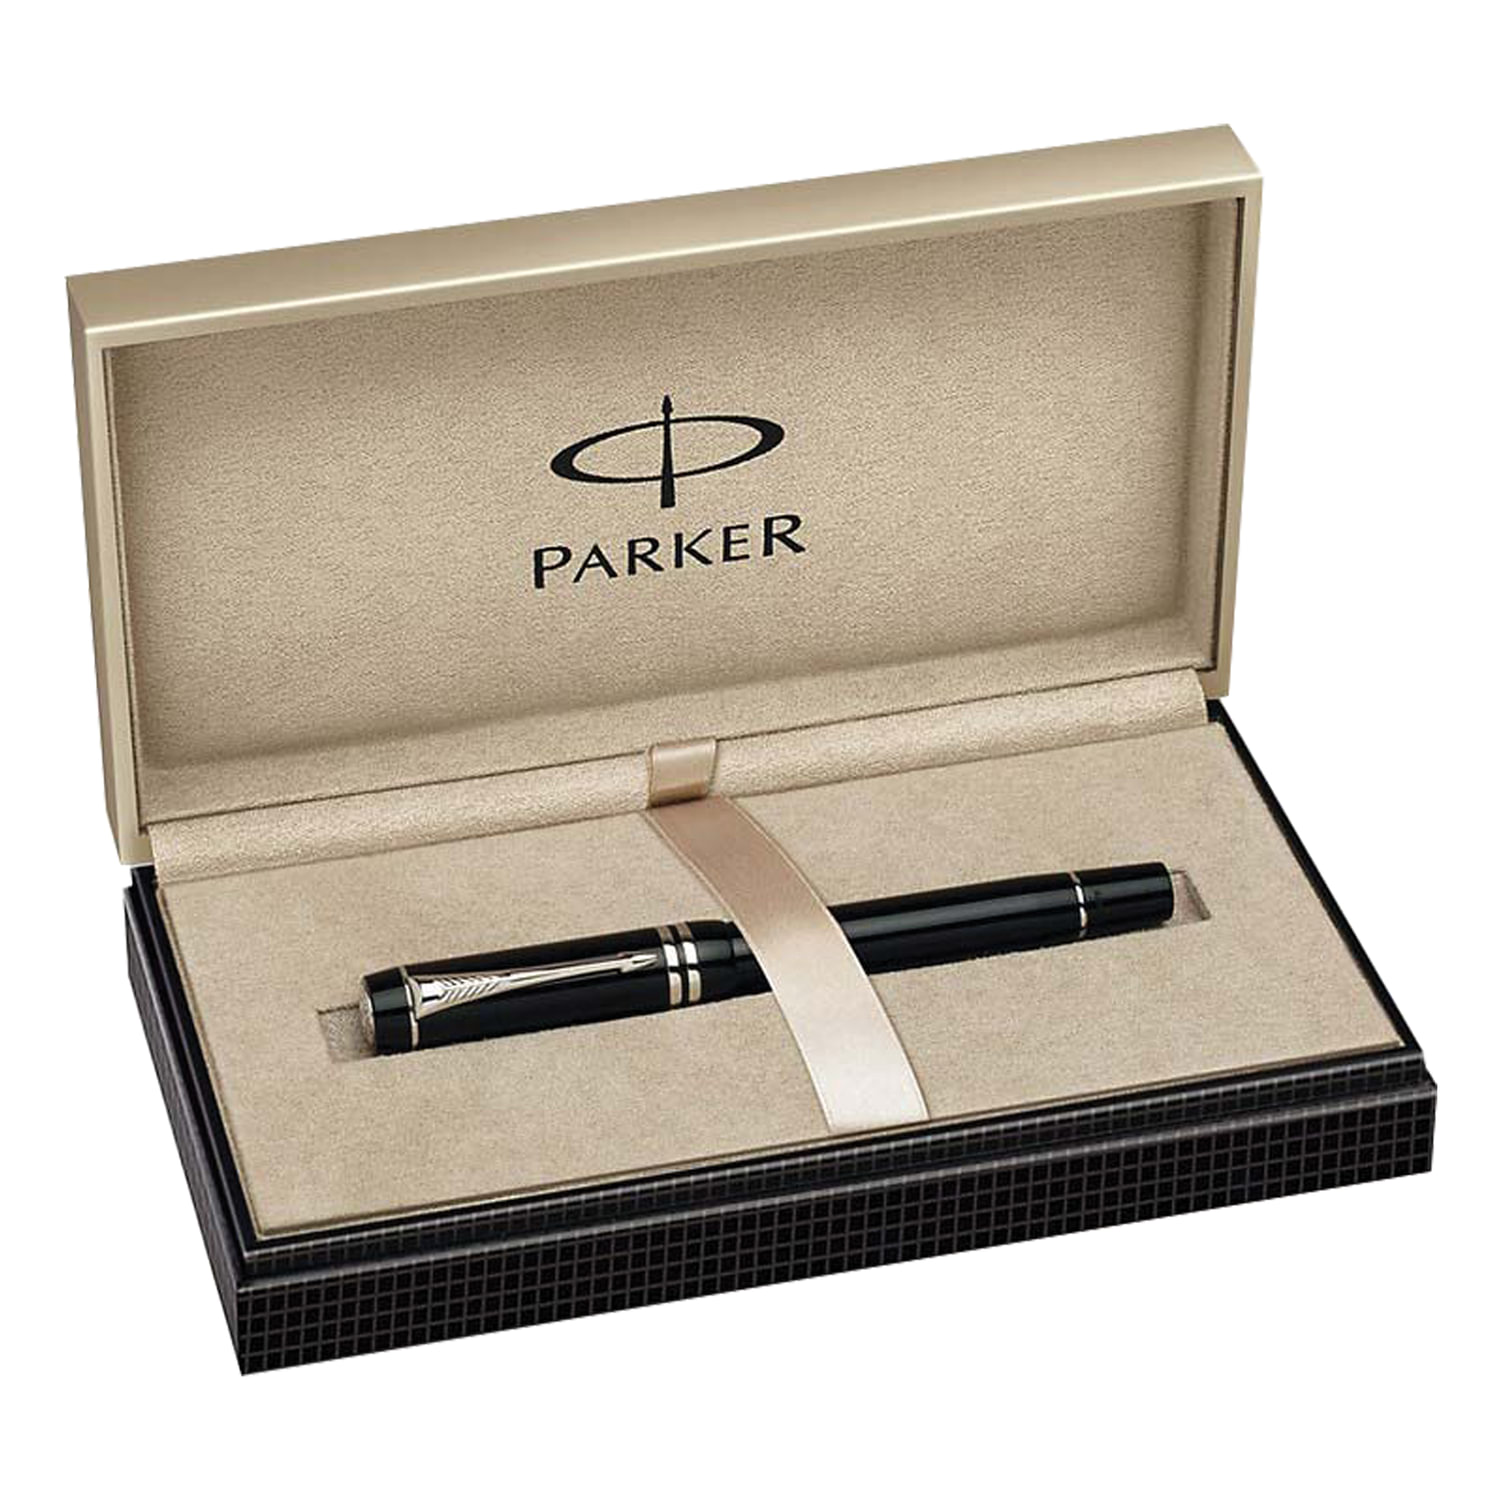 Ручки паркер из чего сделаны: Материалы, используемые в ручках PARKER .